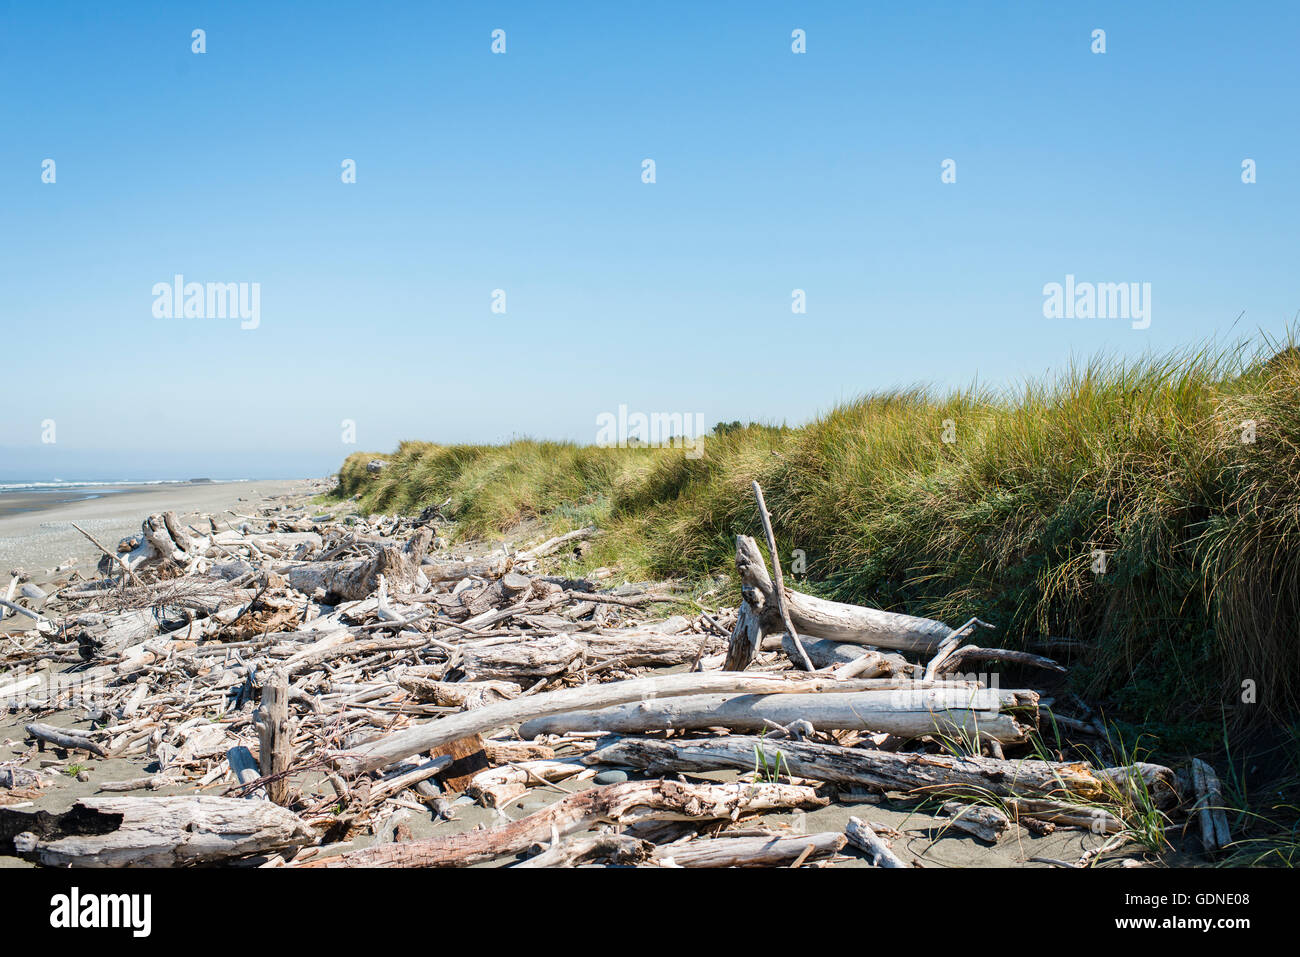 Driftwood washed ashore on beach, Oregon Coast, USA Stock Photo